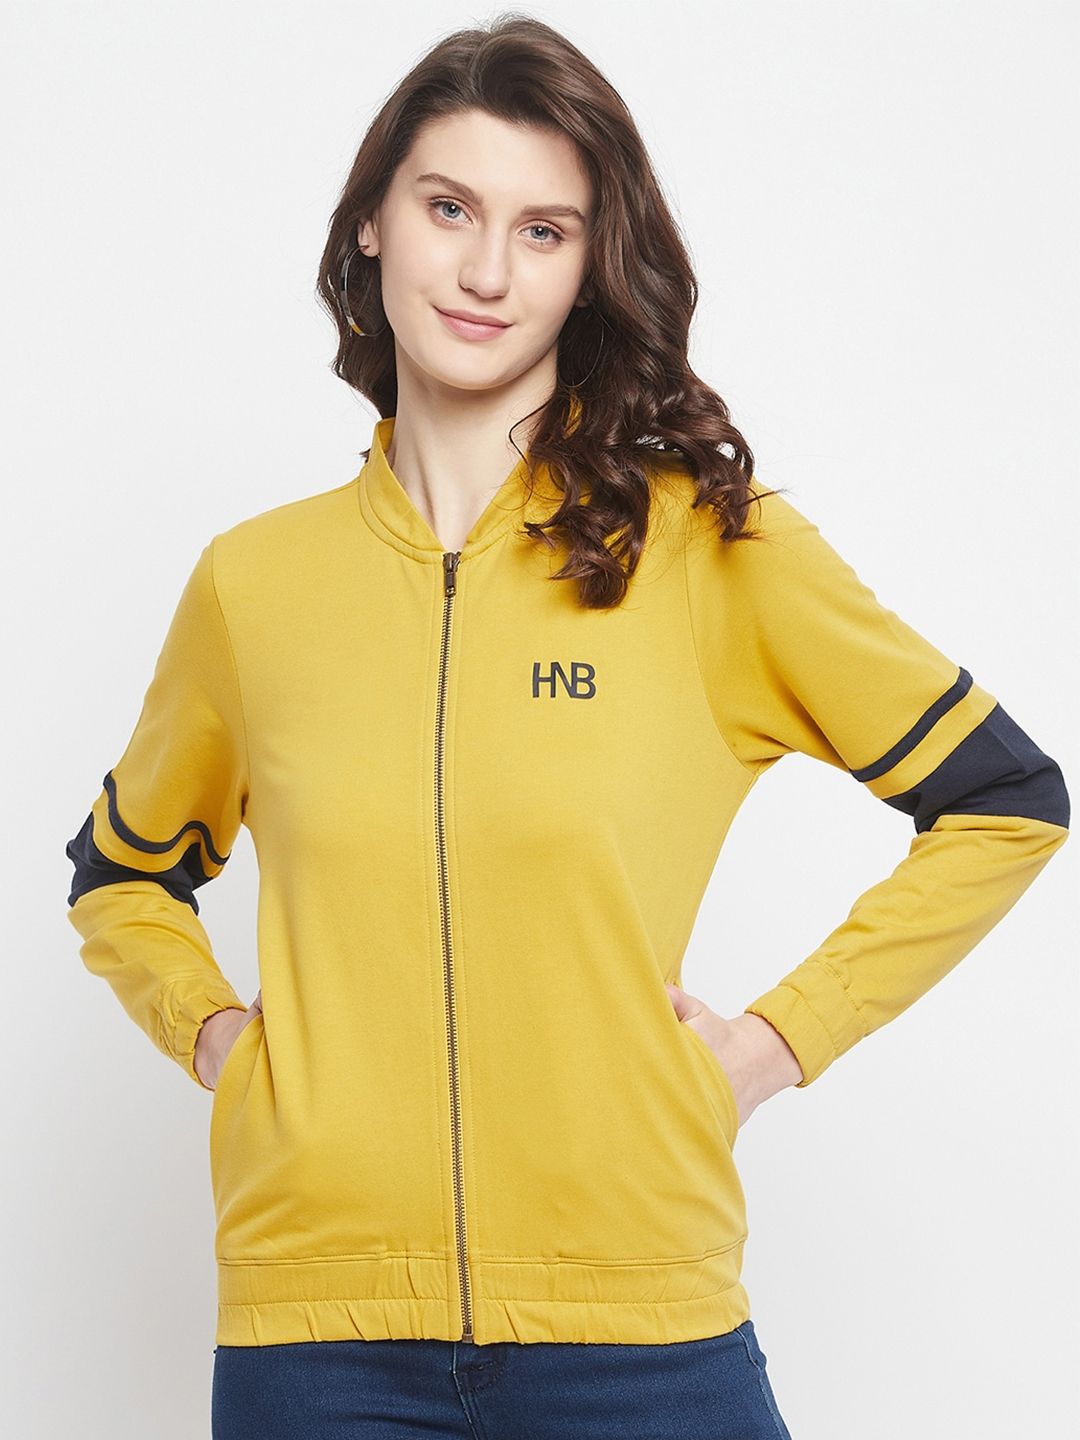 HARBORNBAY Women Yellow Sweatshirt Price in India